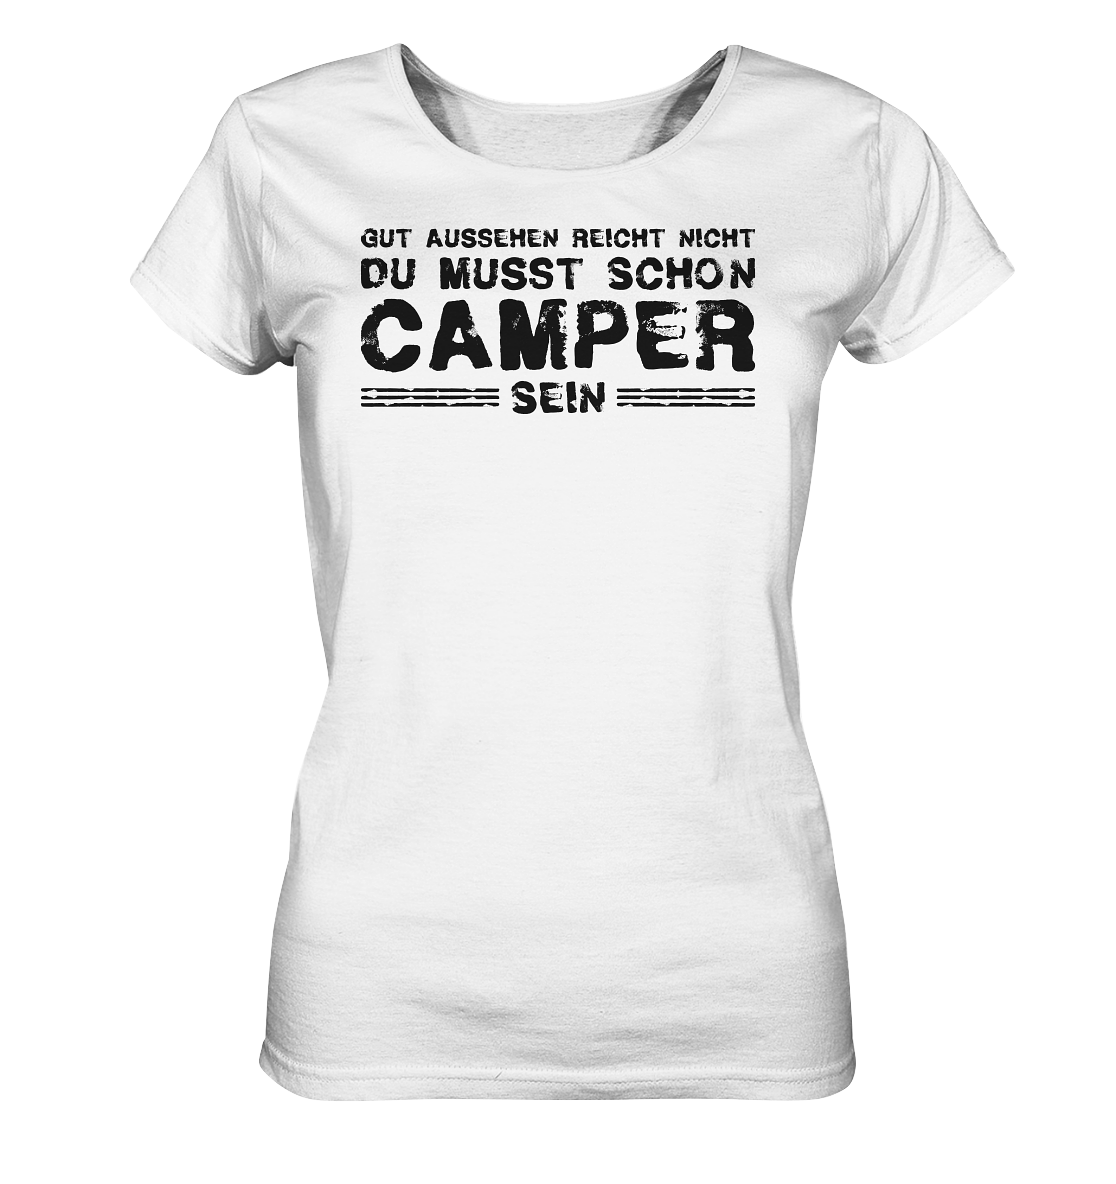 Du musst auch Camper sein - Ladies Organic Shirt